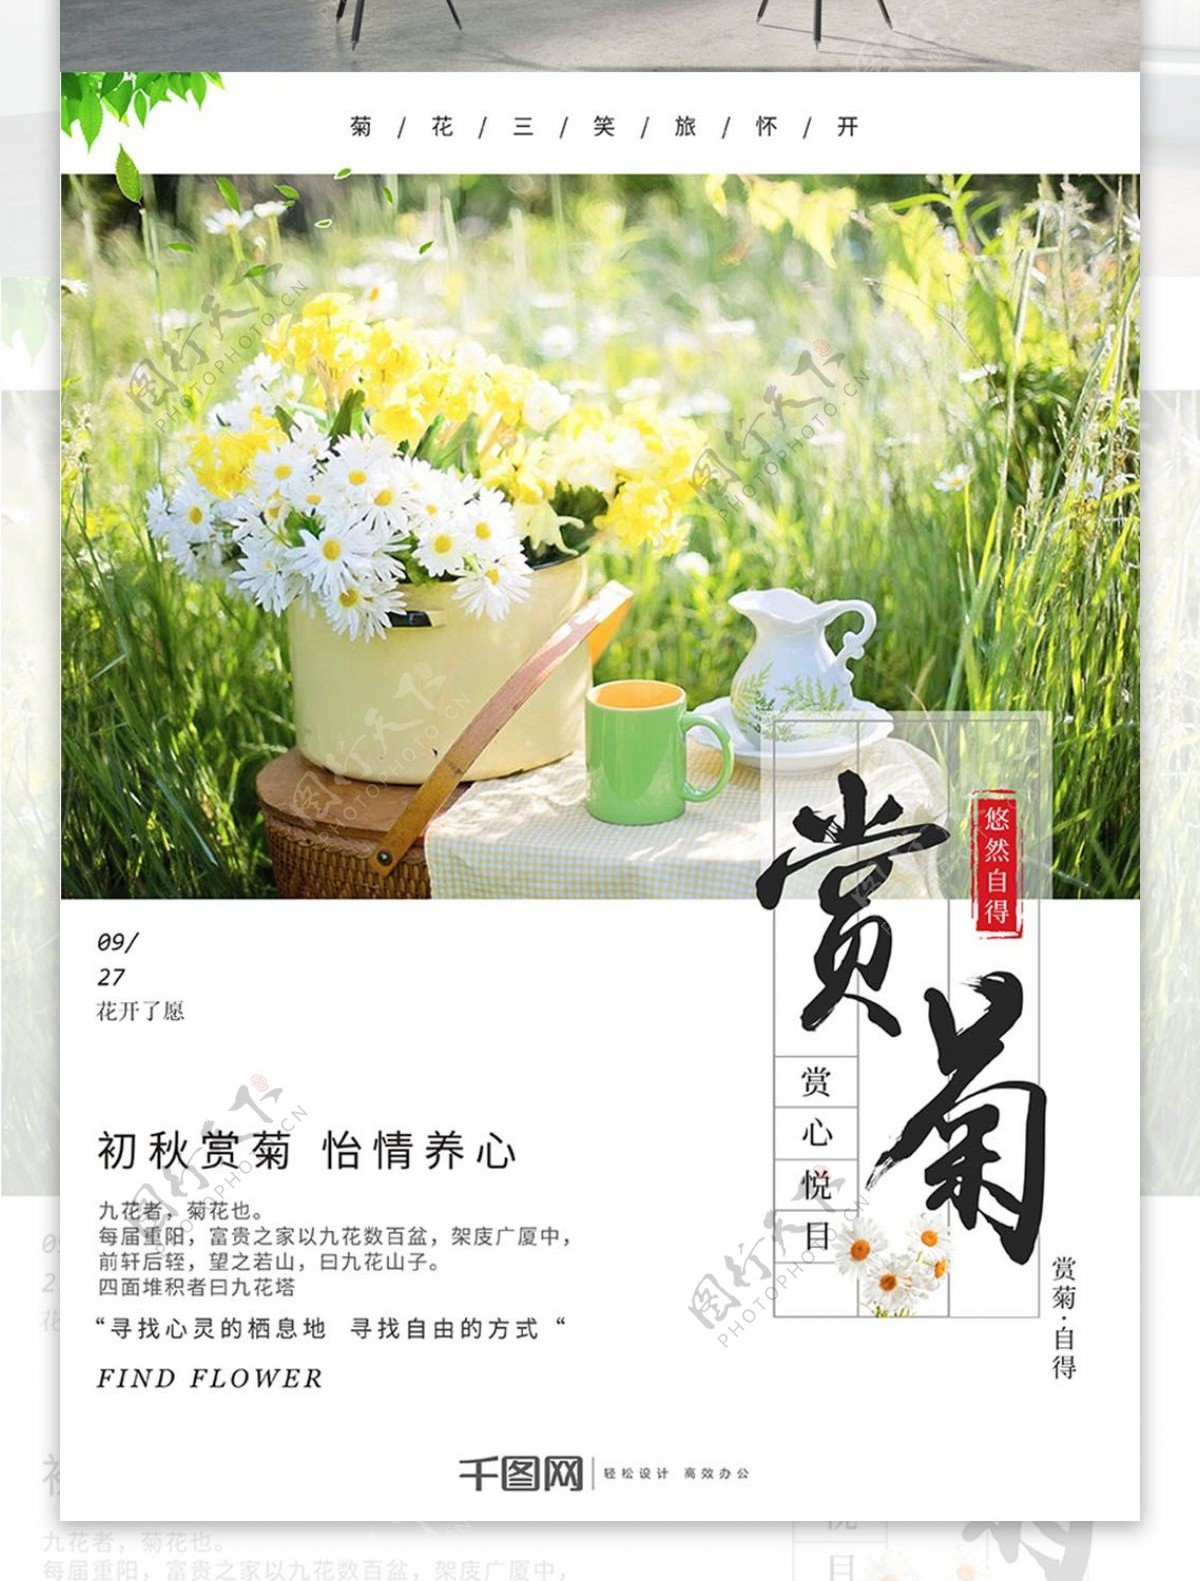 简约小清新赏菊菊花美景旅行促销节日海报